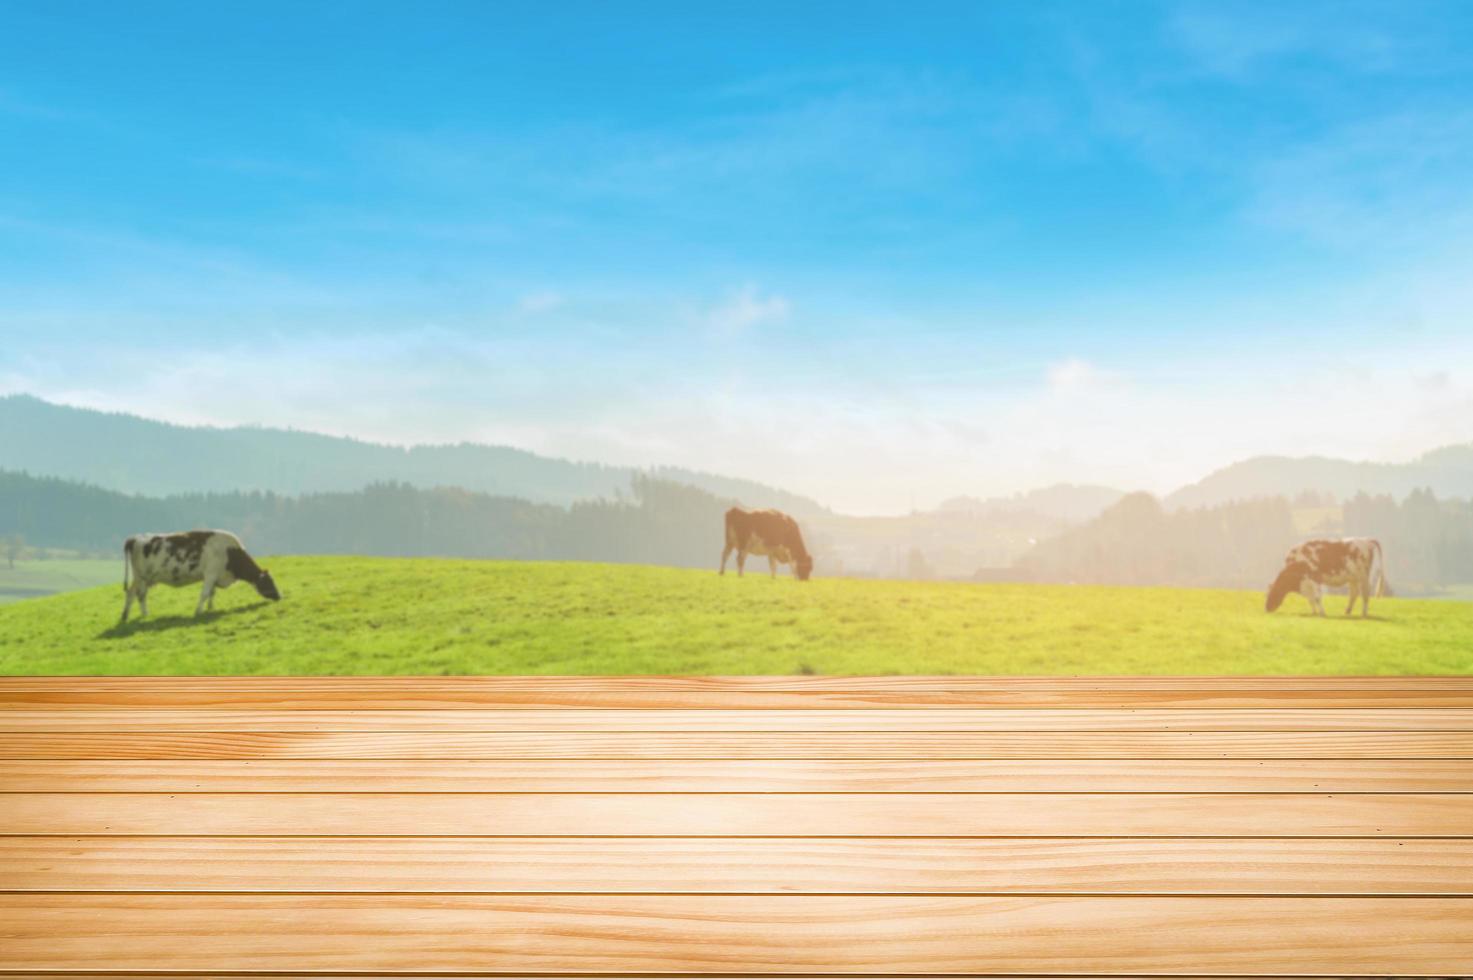 tampo da mesa de madeira sobre turva do fundo da fazenda, vacas na montanha verde com céu azul. foto